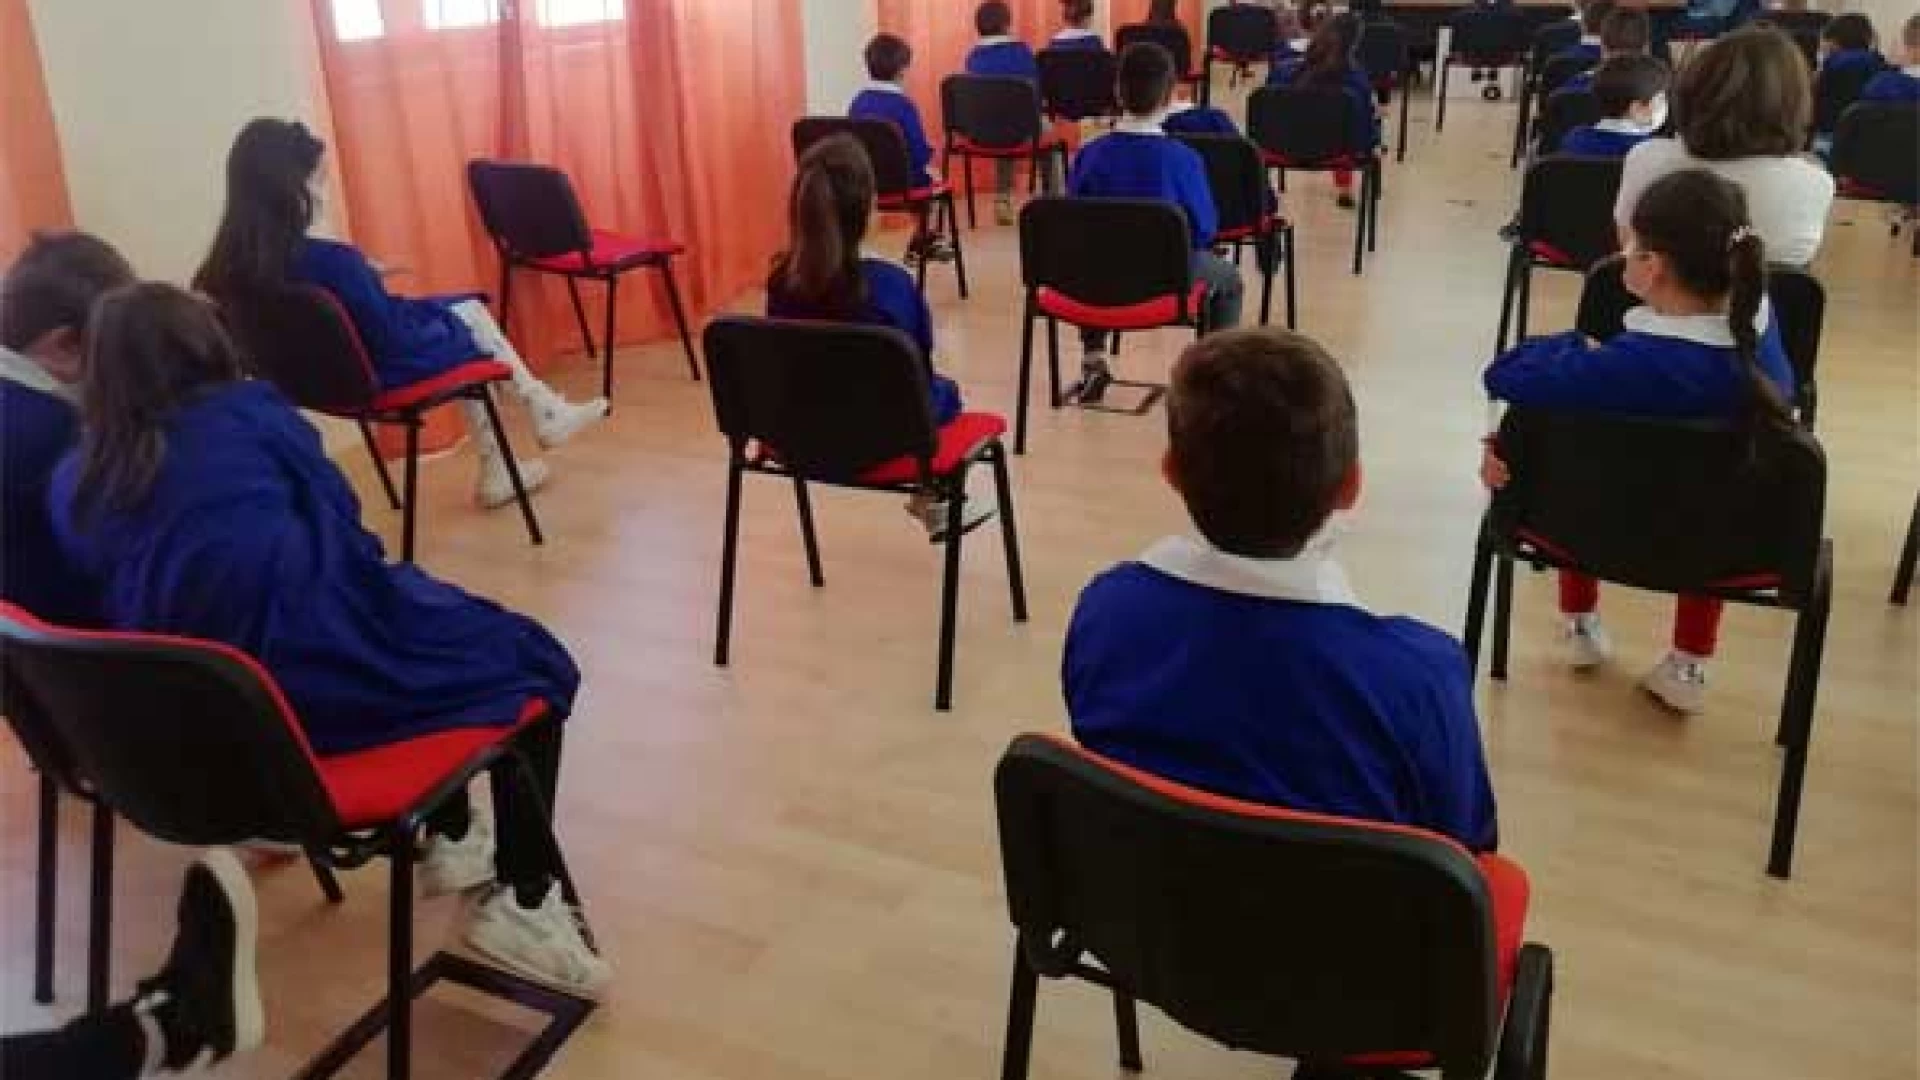 Bambini Ucraini frequentano la scuola a Macchiagodena. In arrivo in paese anche due nuclei familiari ospitati in alloggi messi a disposizione dal comune.